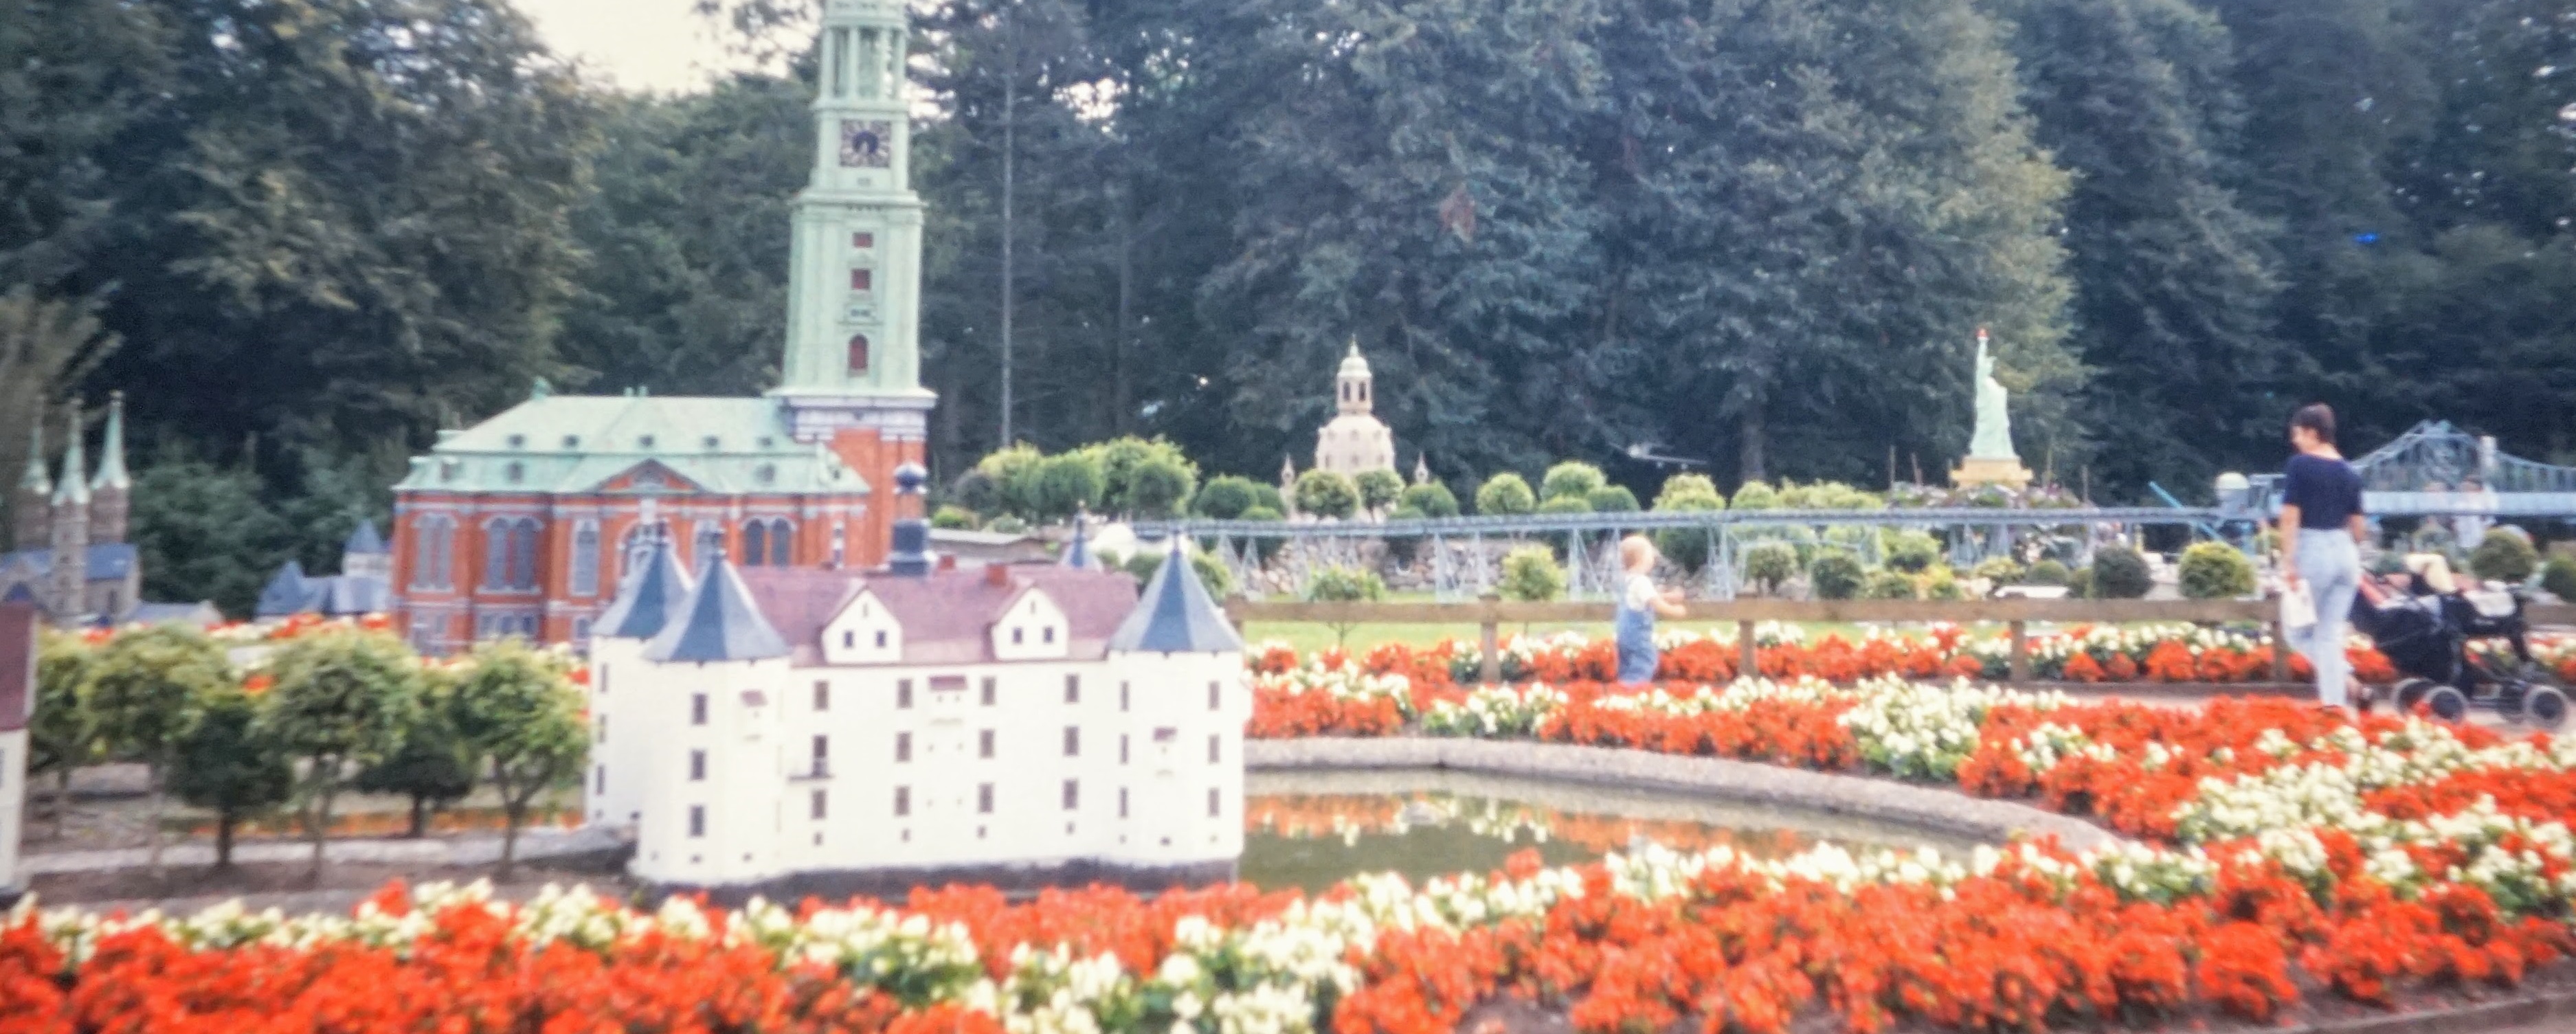 Miniatuur Walcheren | Der Miniaturpark in Middelburg 1995 | mit Video